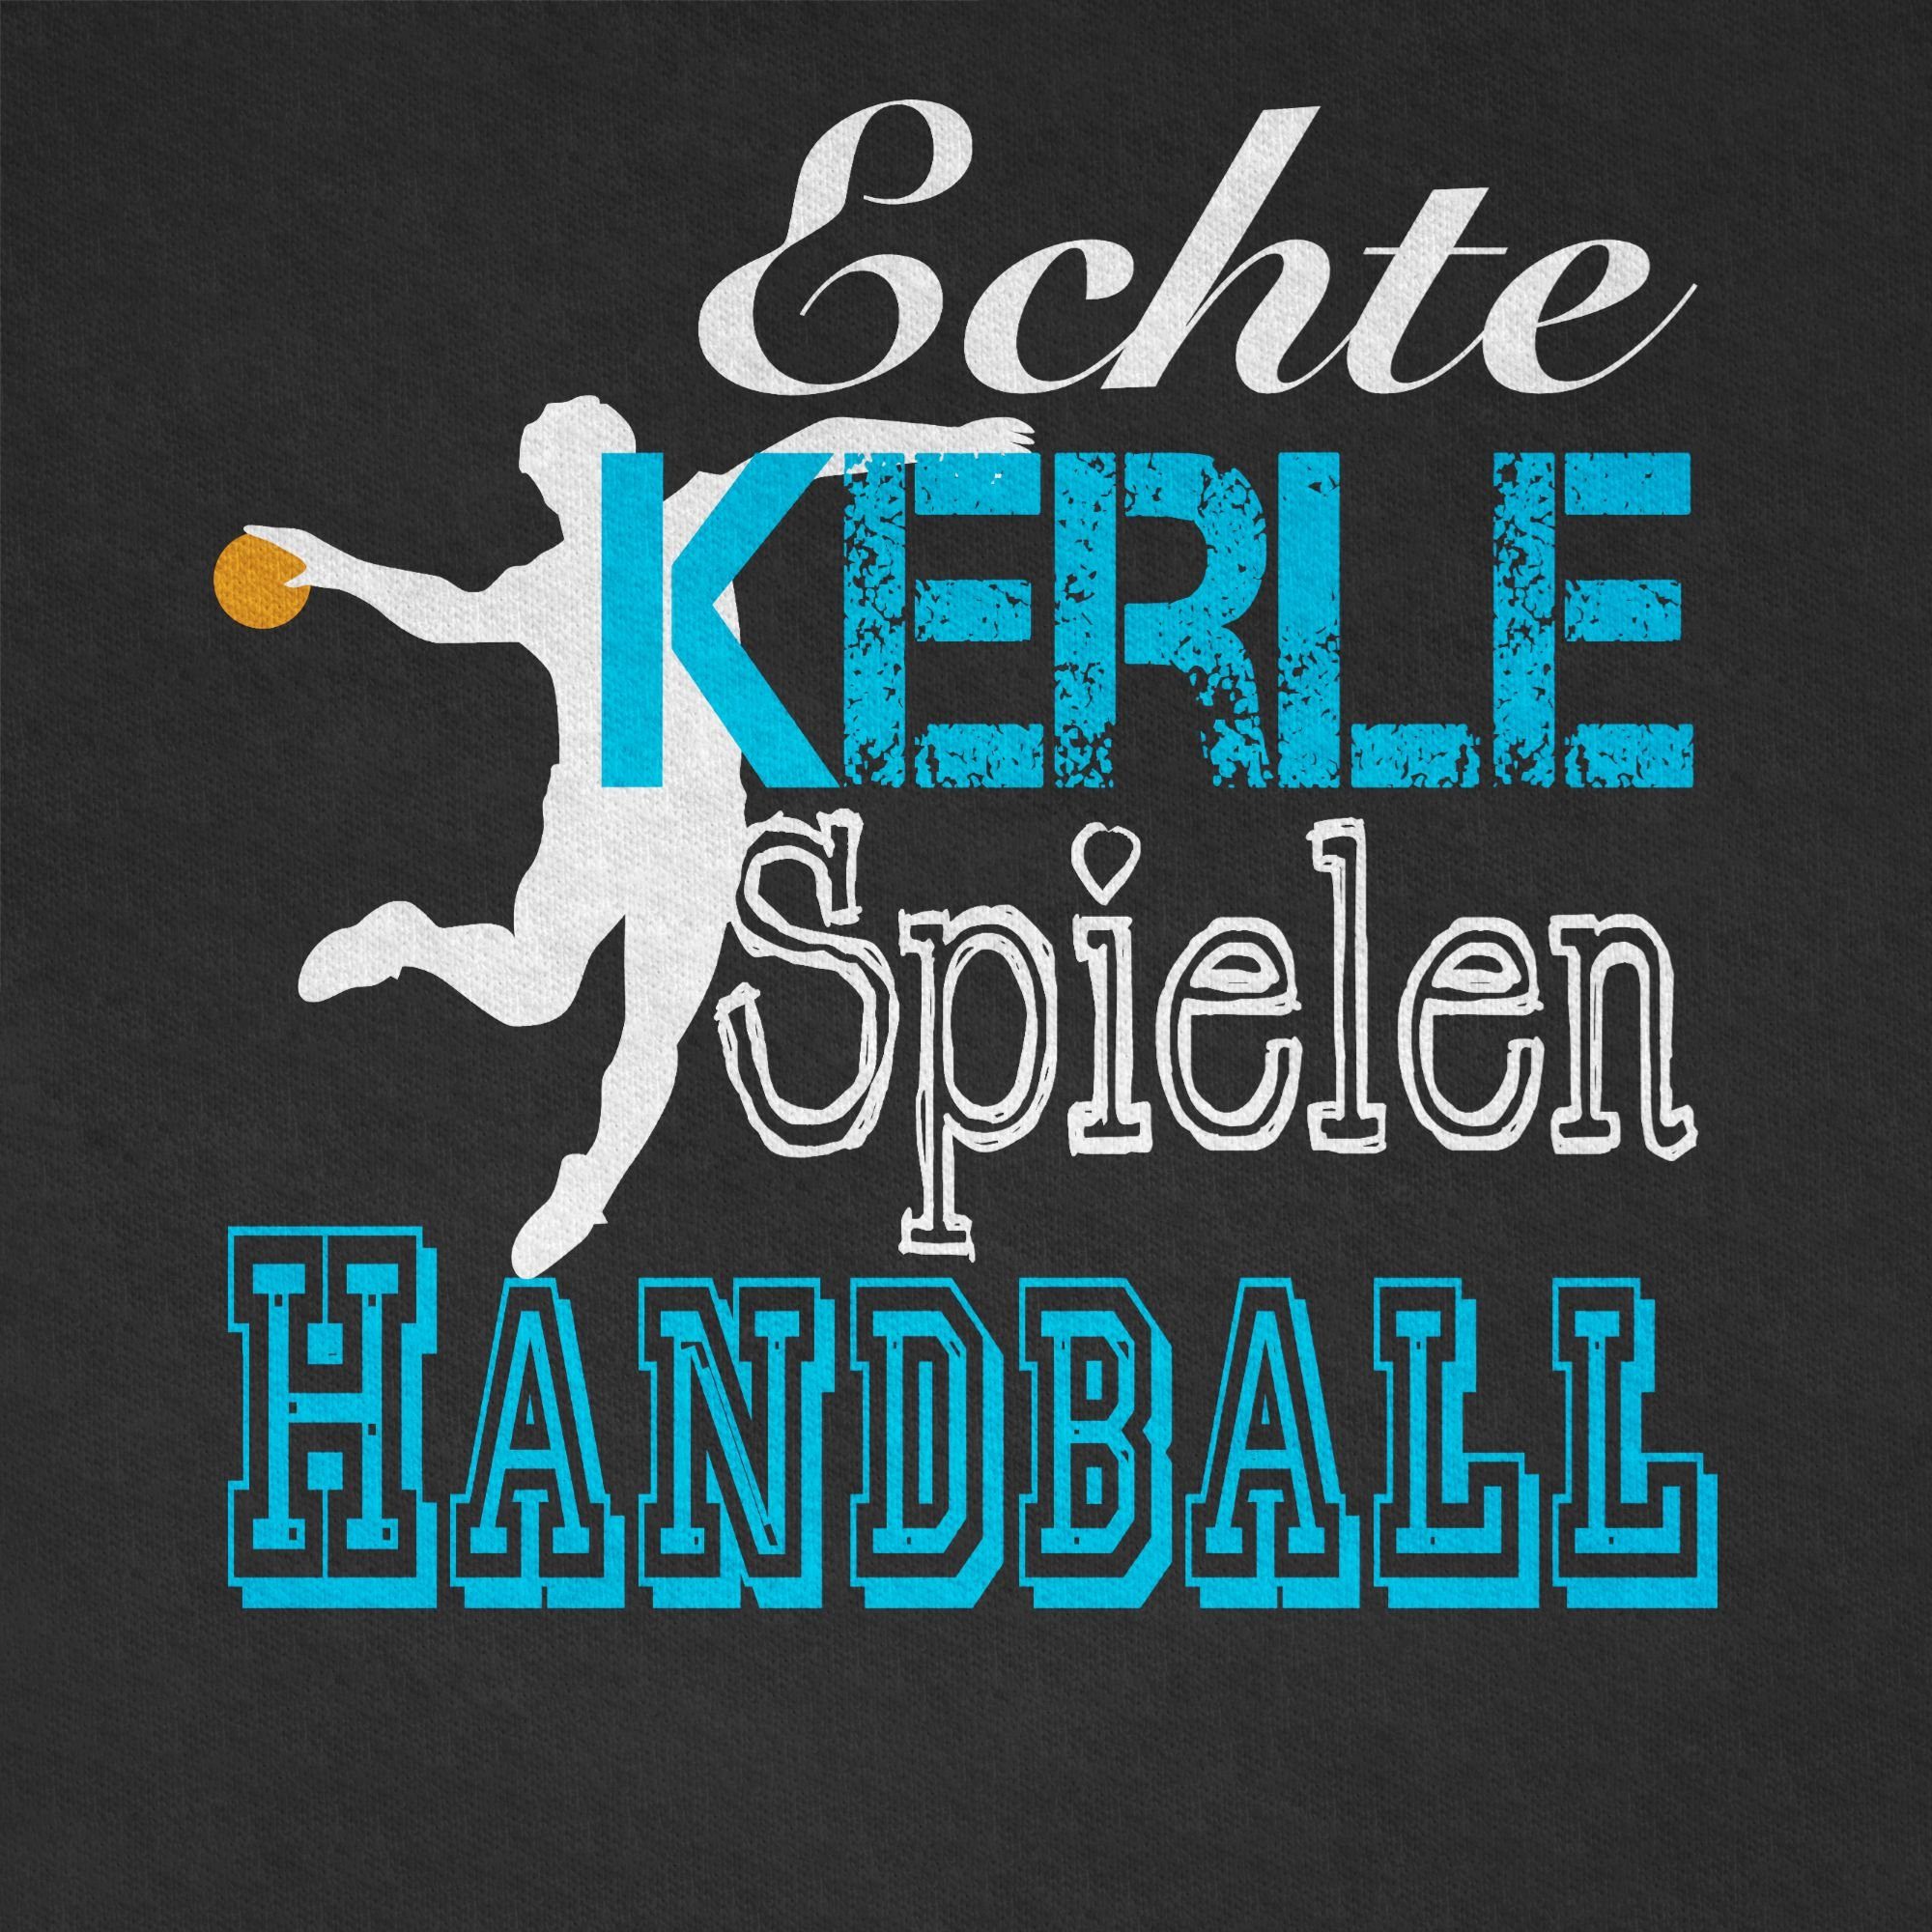 Shirtracer T-Shirt weiß Sport Schwarz Handball 2 Spielen Echte Kerle Kleidung Kinder